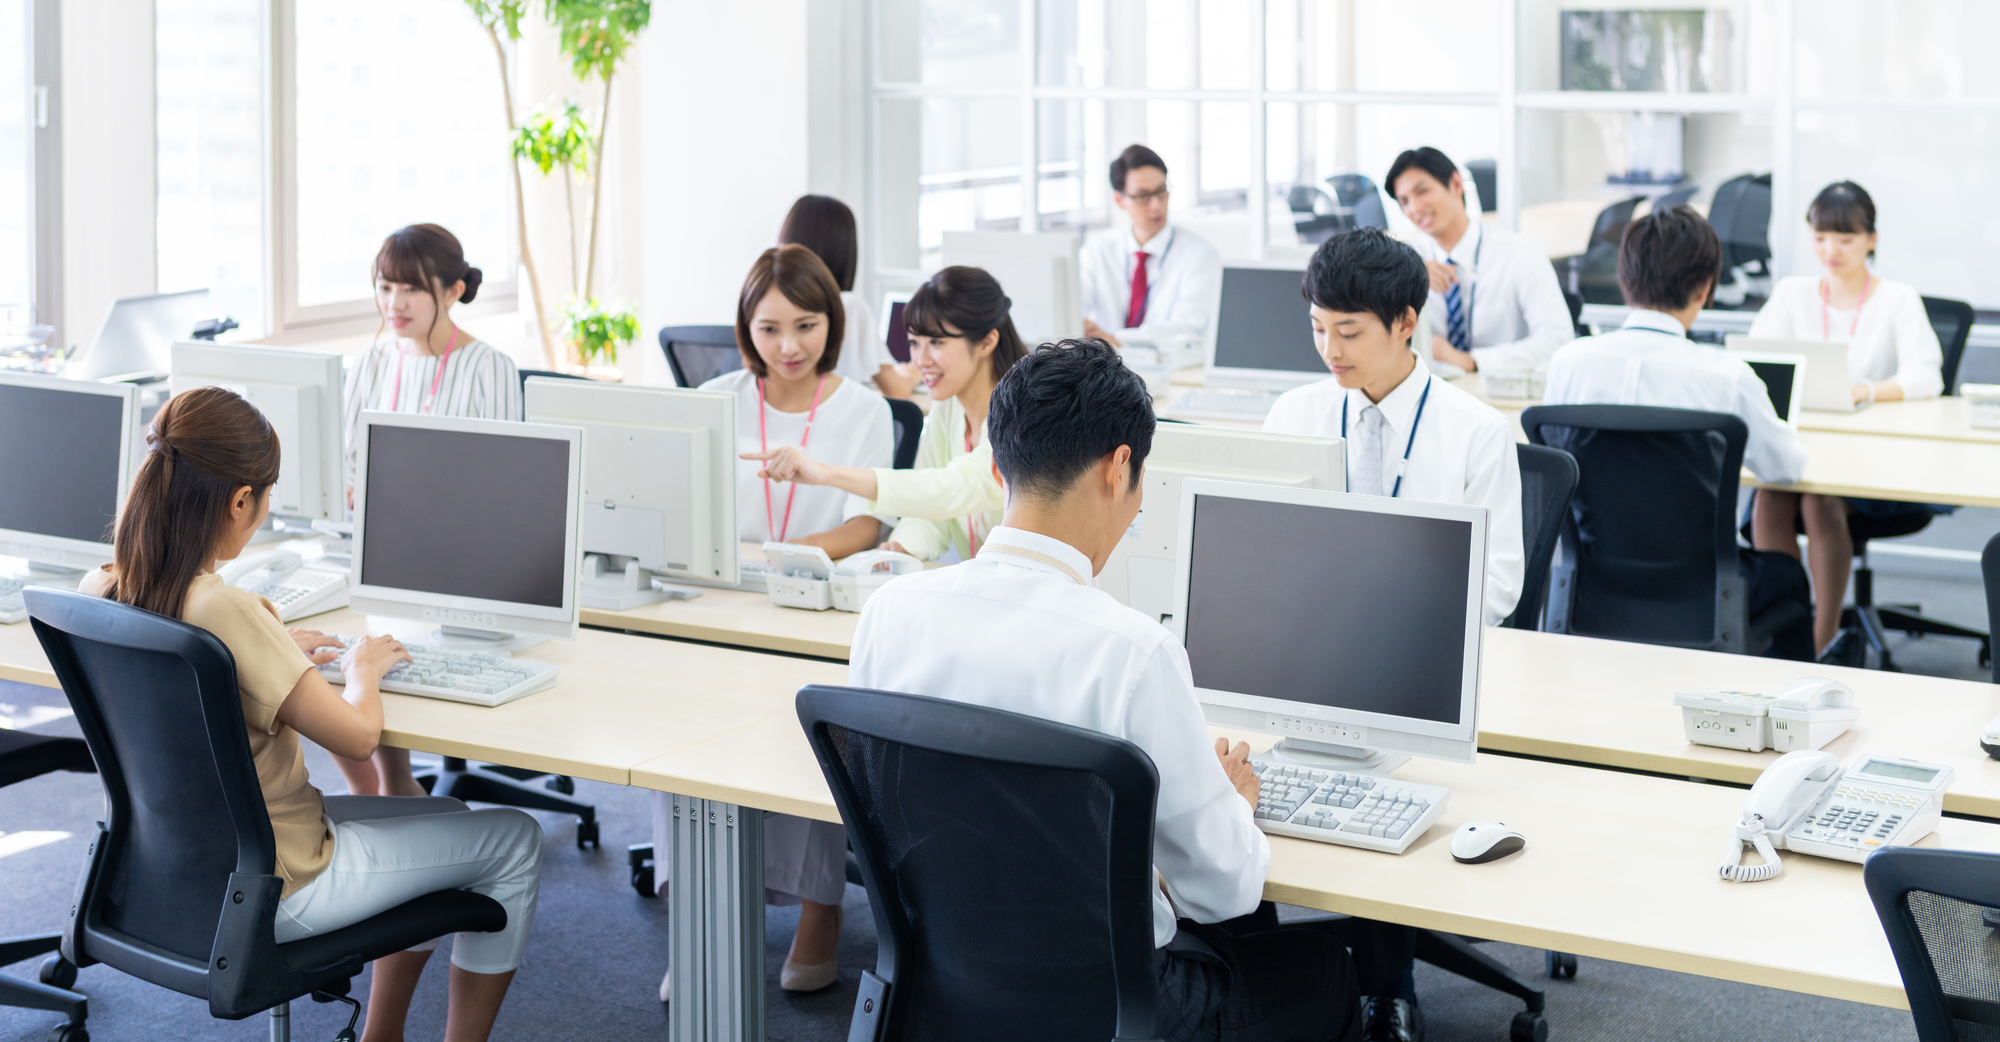 精神障害による労災補償が増えつづける日本